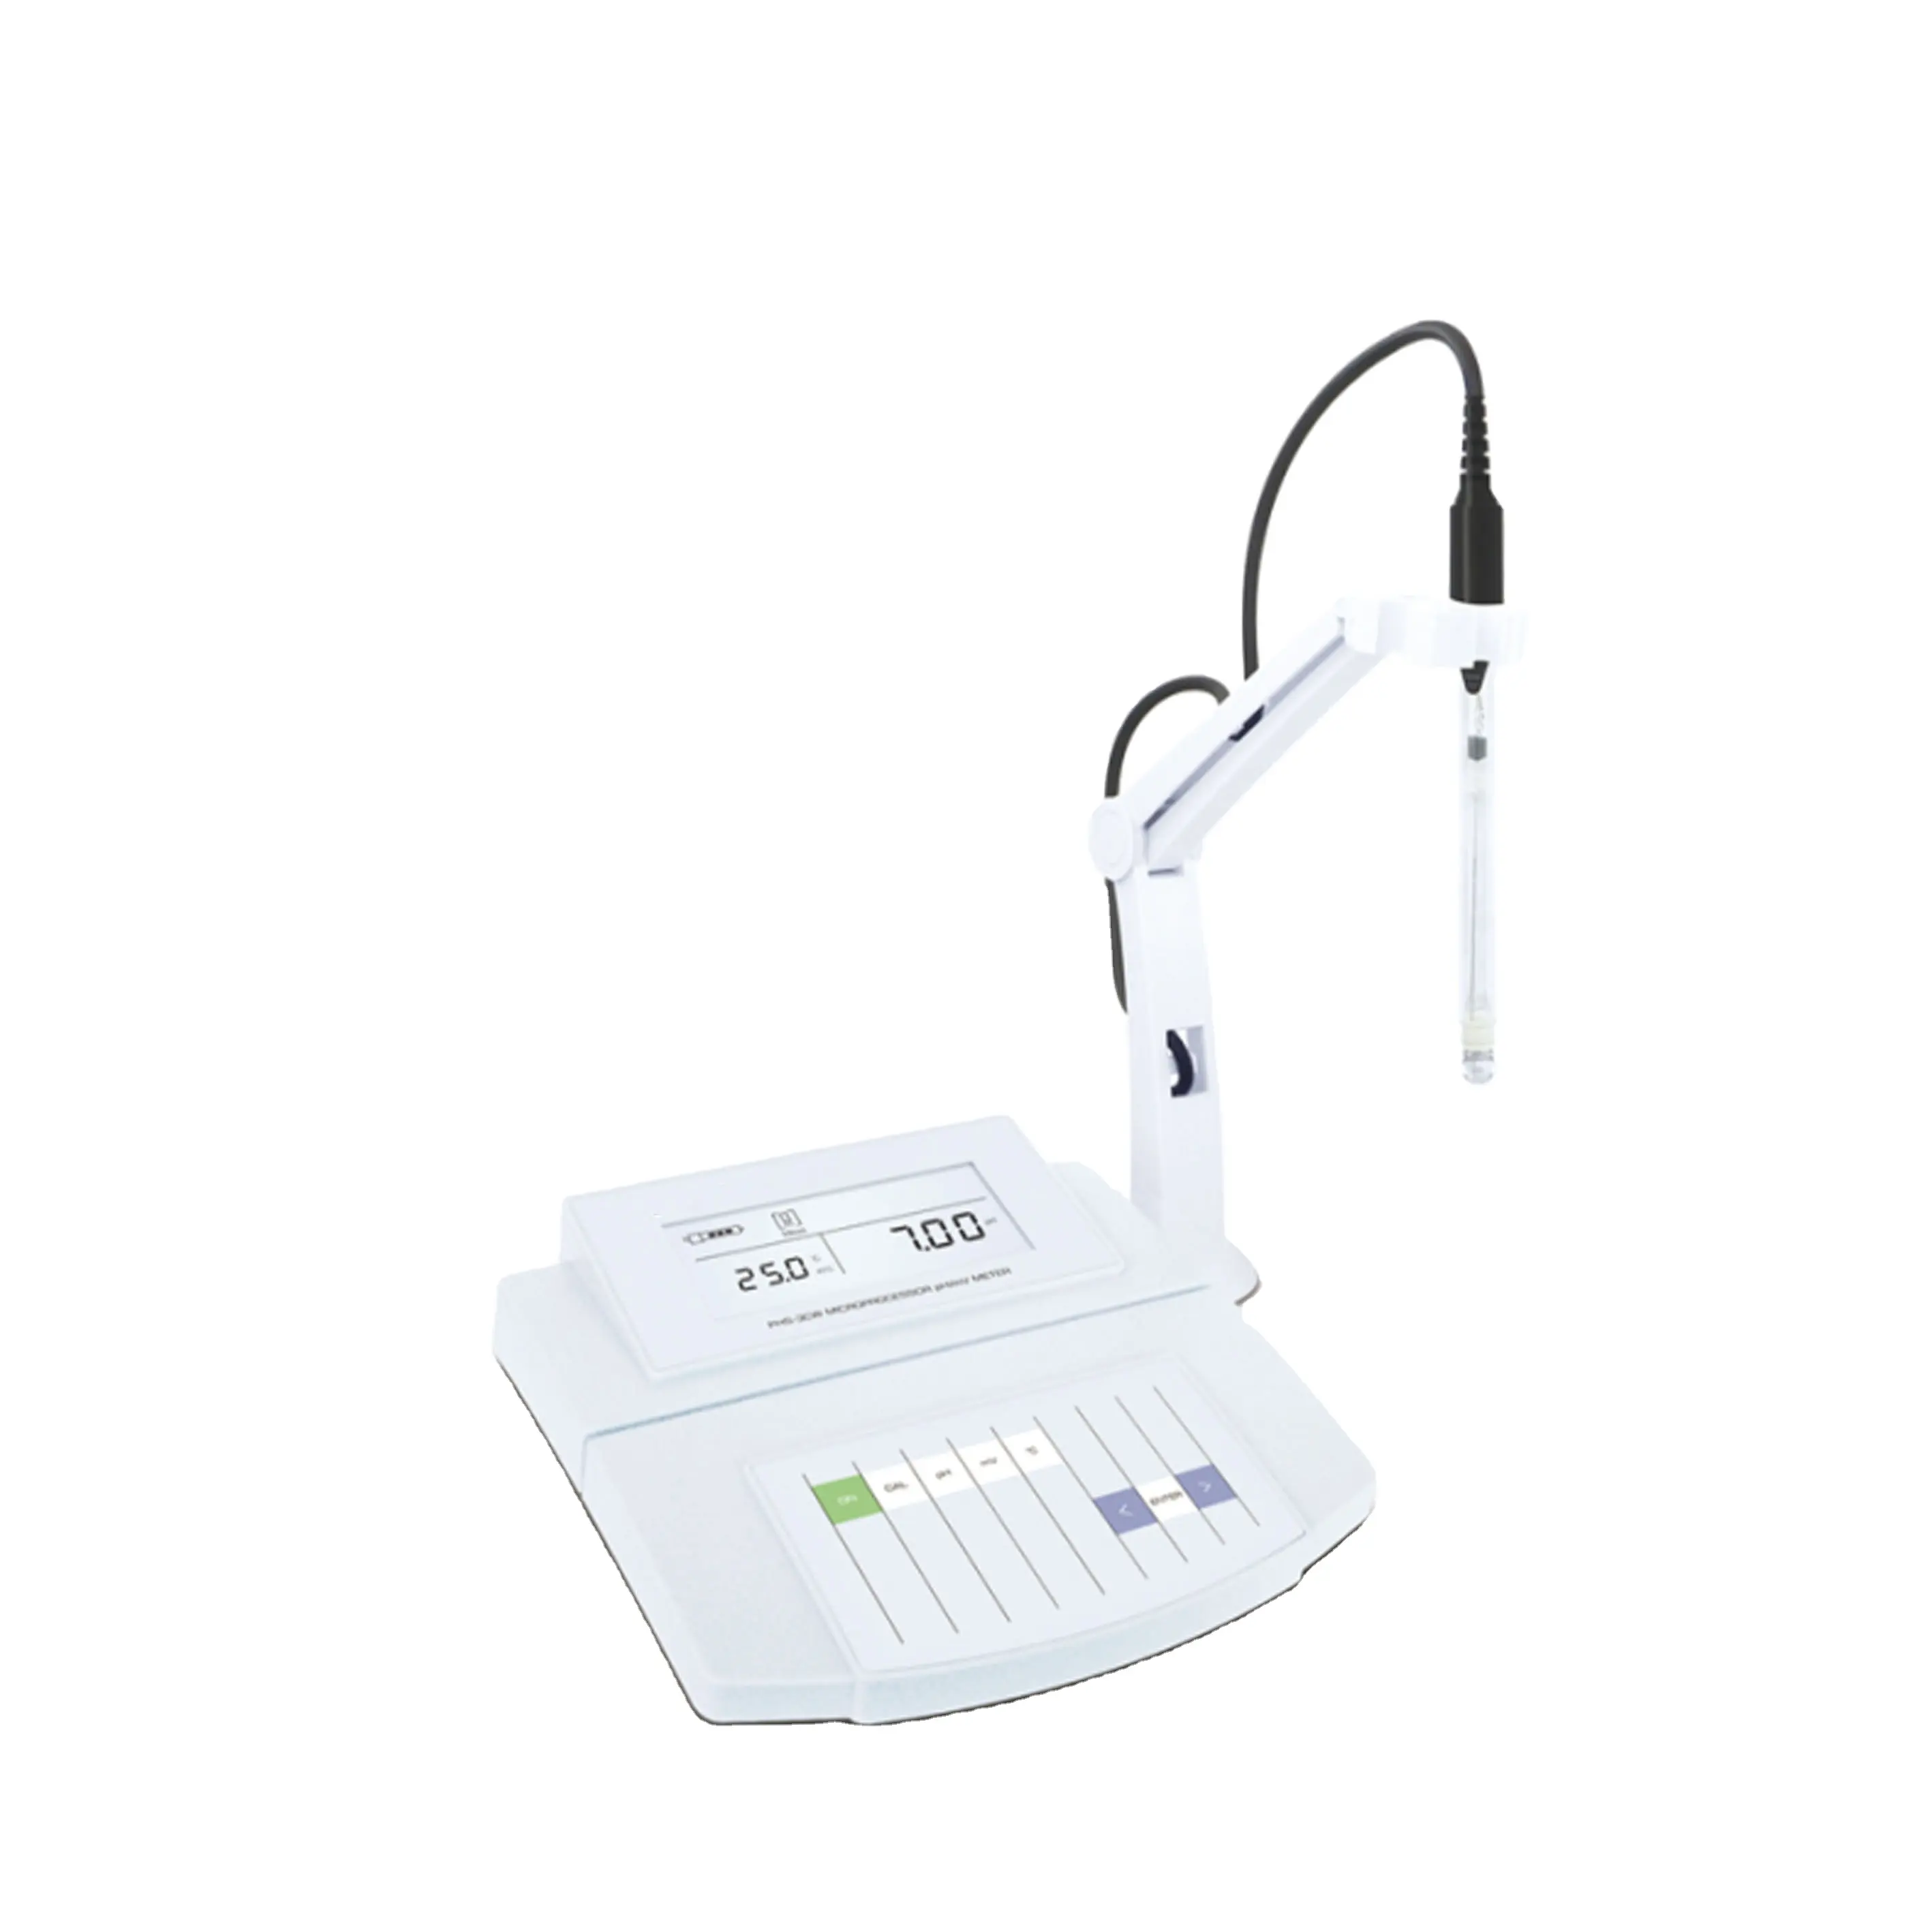 BIOSTELLAR Portable/banc multiparamètre compteur de qualité de l'eau PH température ORP ION CONDUCTIVITÉ TDS